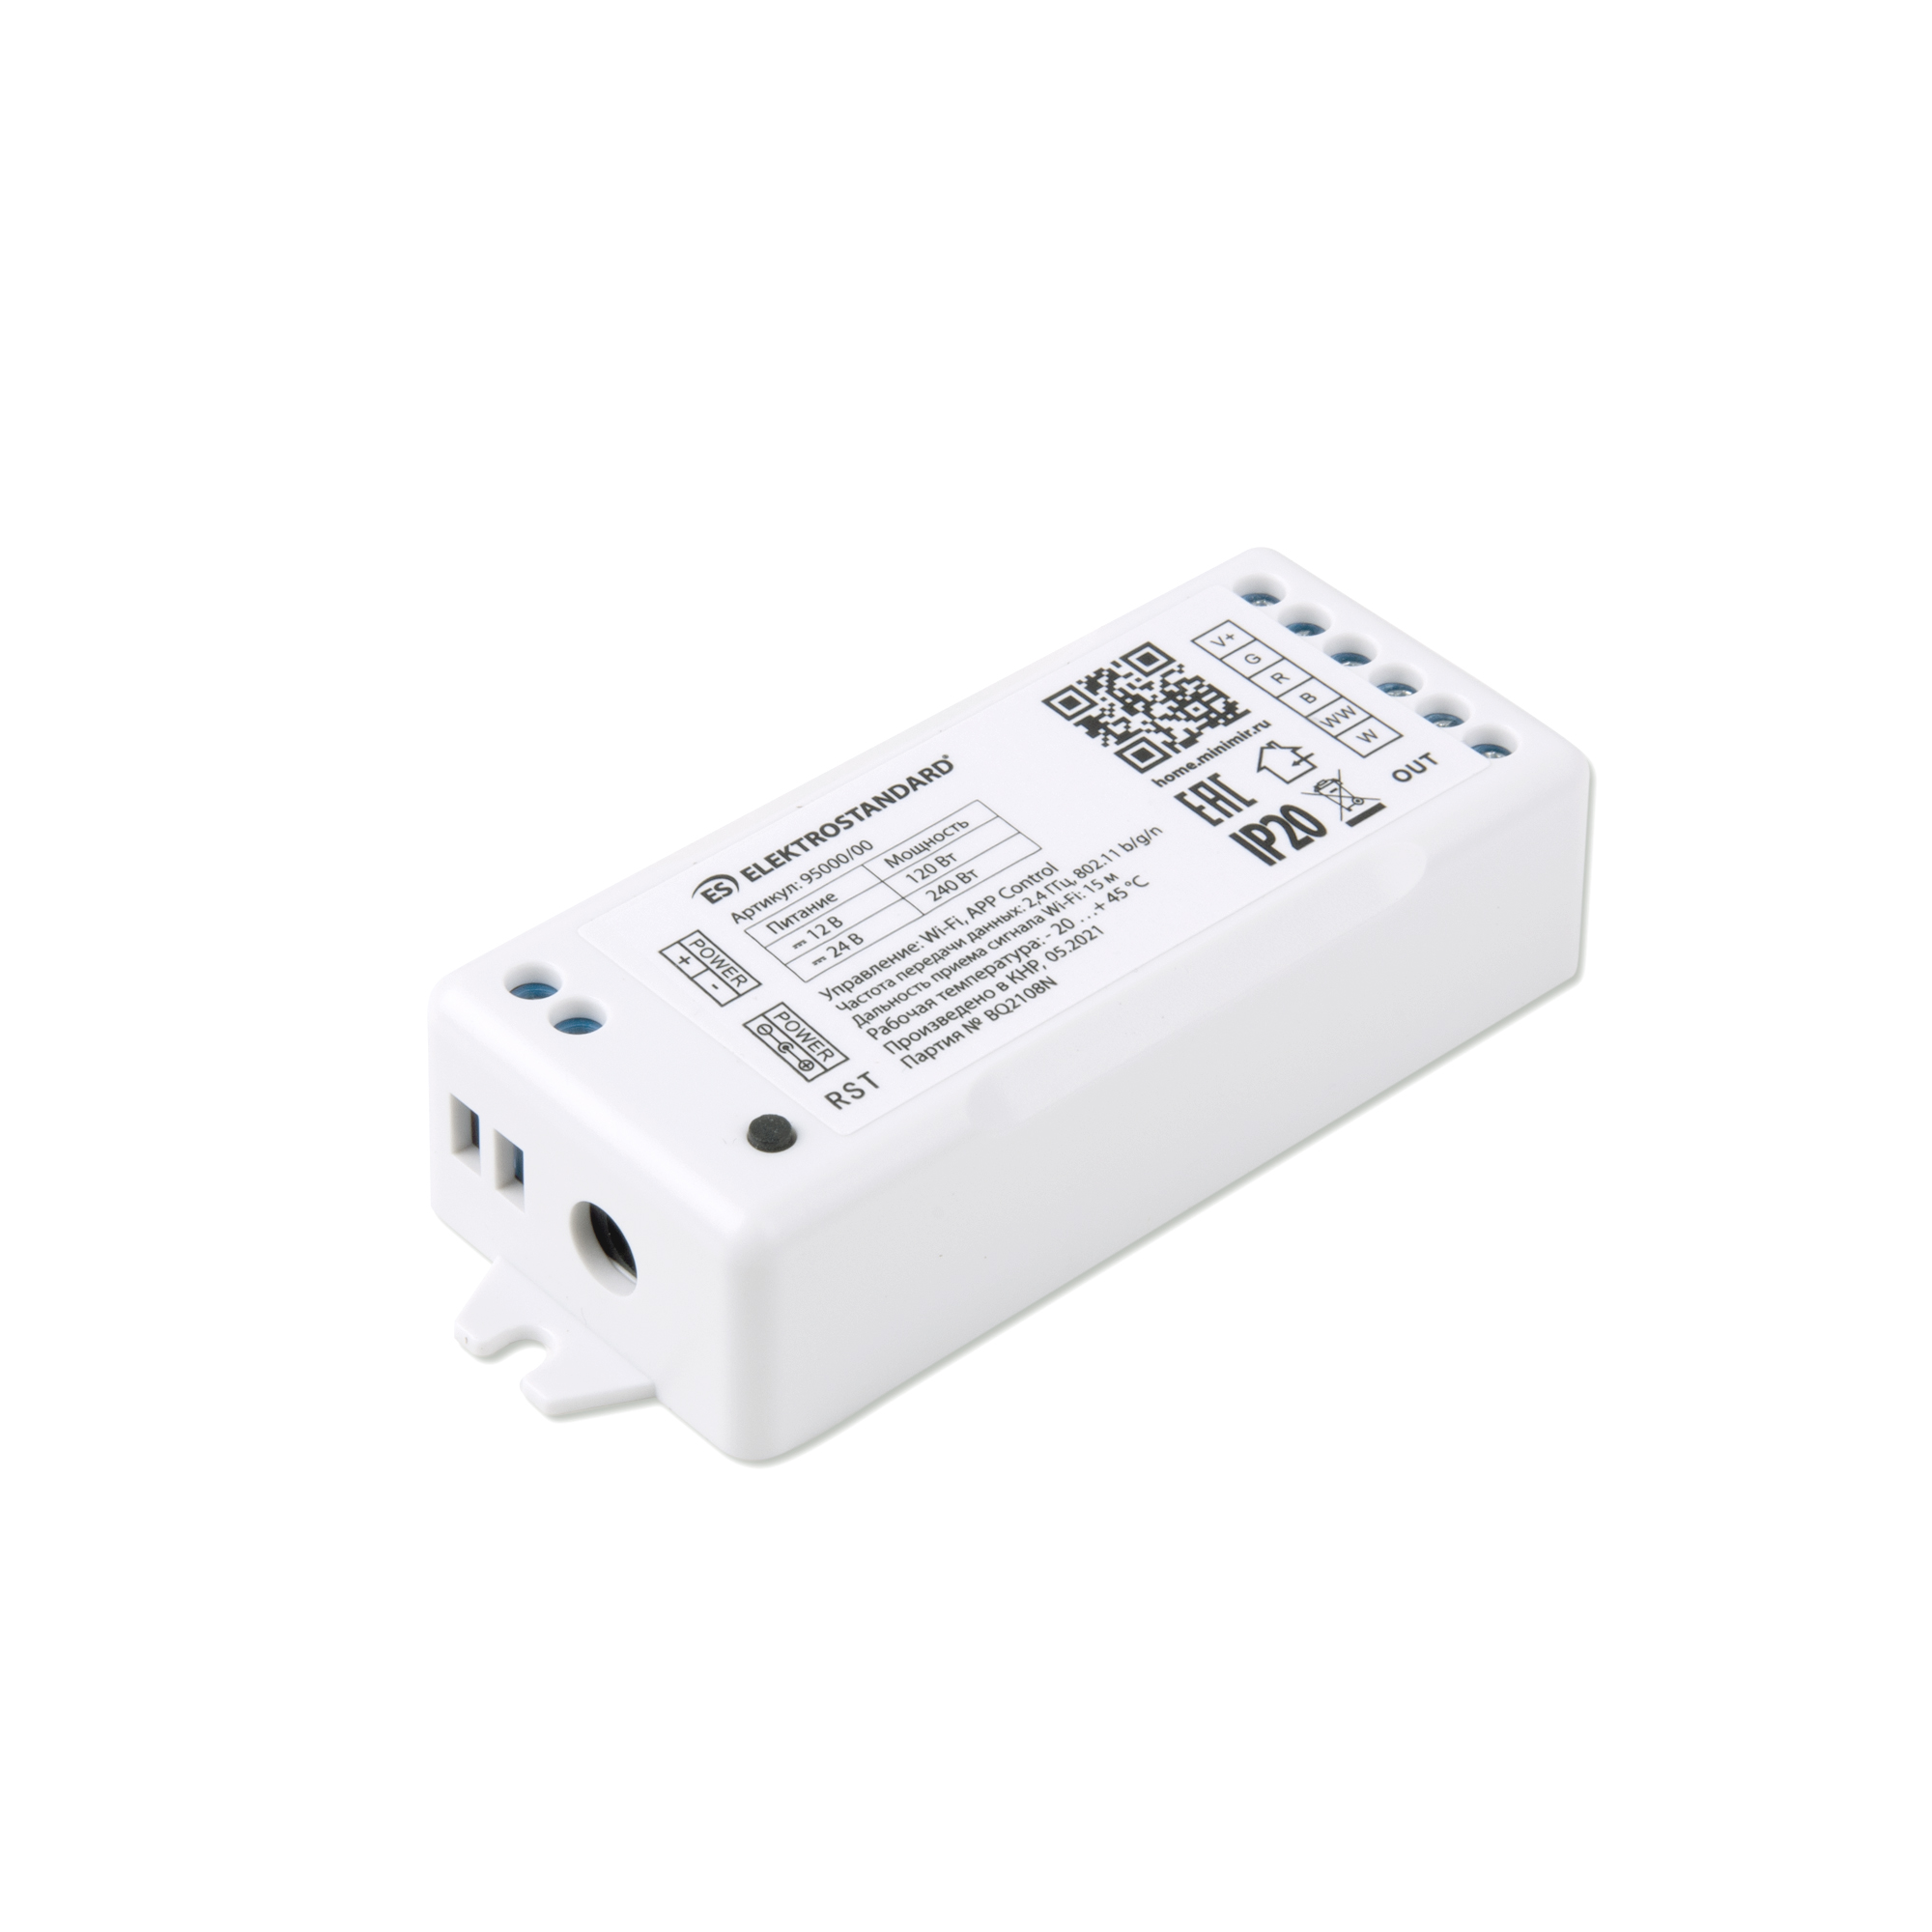 Умный контроллер для светодиодных лент RGBWW 12-24V Elektrostandard 95000/00 Minimir Home умный блокнот для планирования финансов